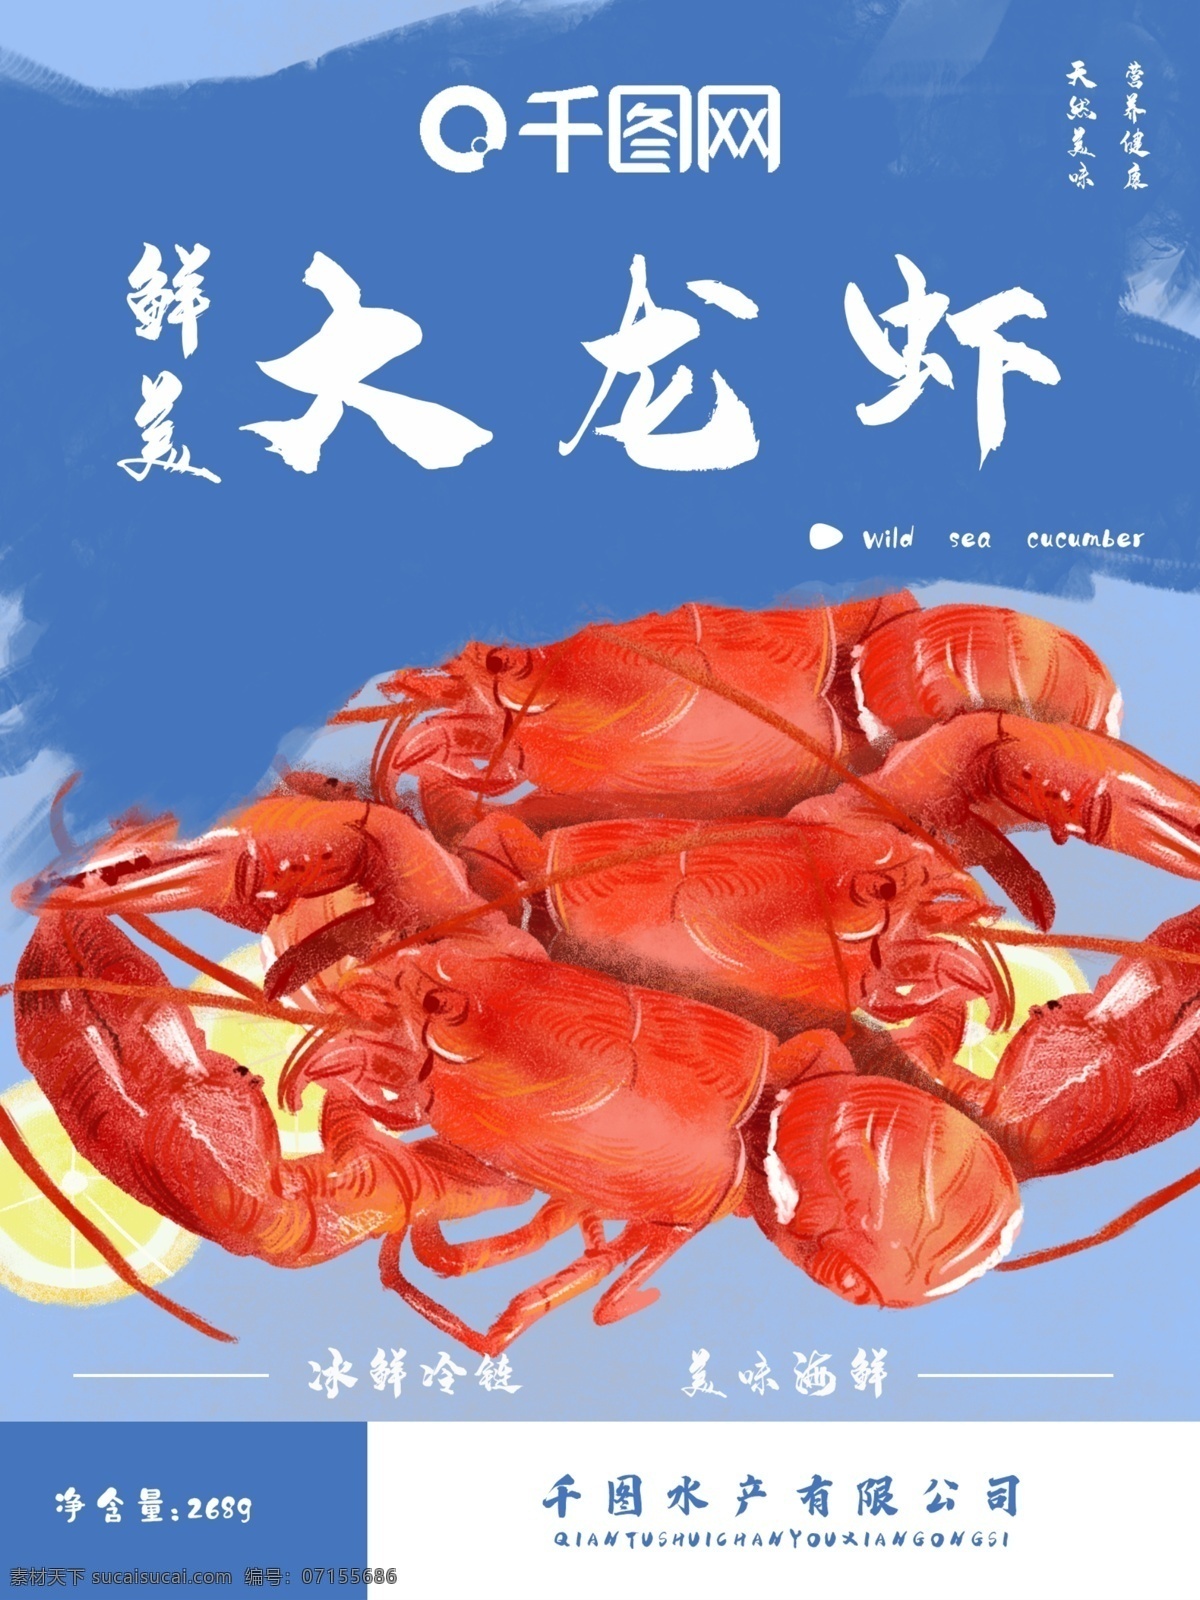 海鲜 大龙 虾 美食 小 清新 食品包装 原创 插画 龙虾 海产 食品 包装